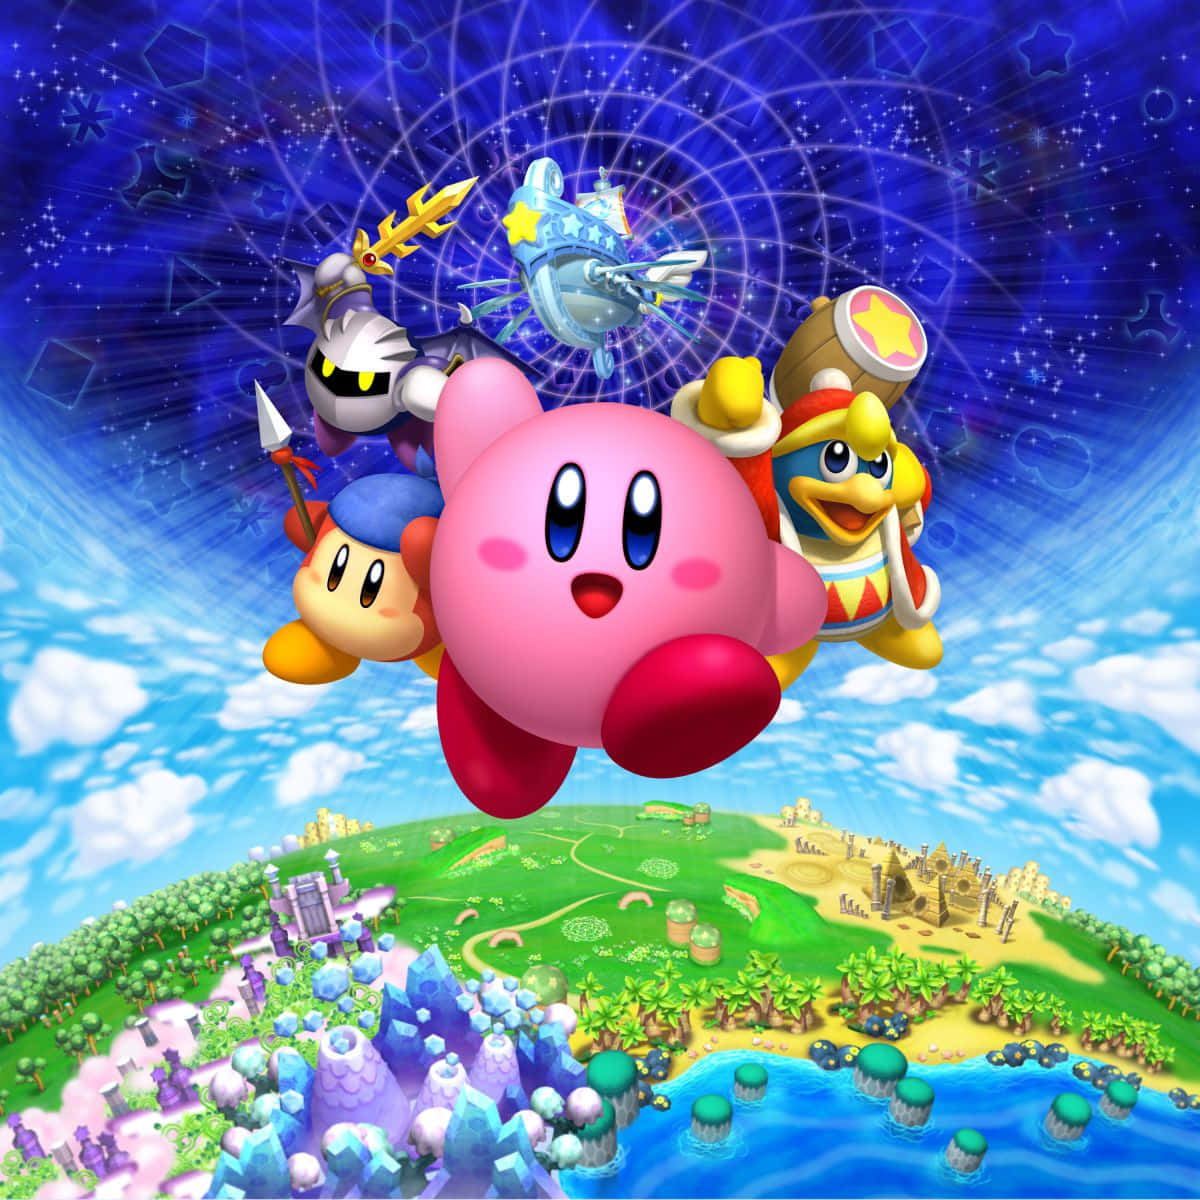 Denelskelige Kirby Viser Sit Store Smil!